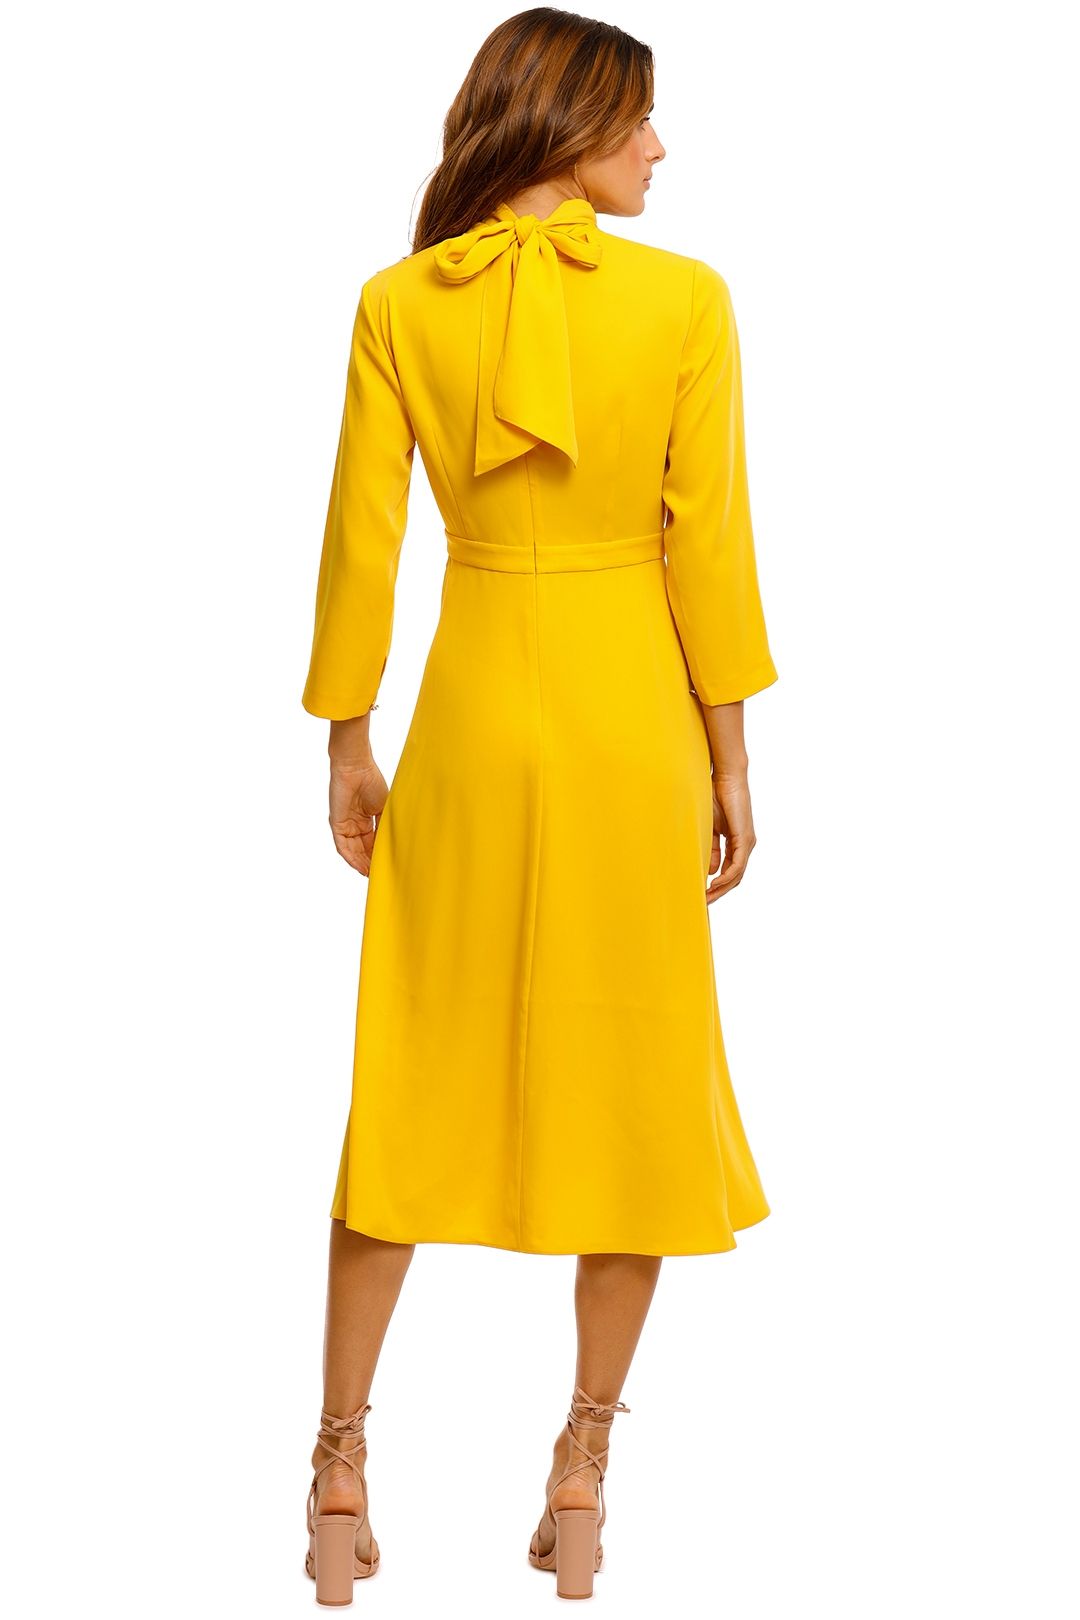 Ted Baker Jilliie V Neck Pleat Dress yellow